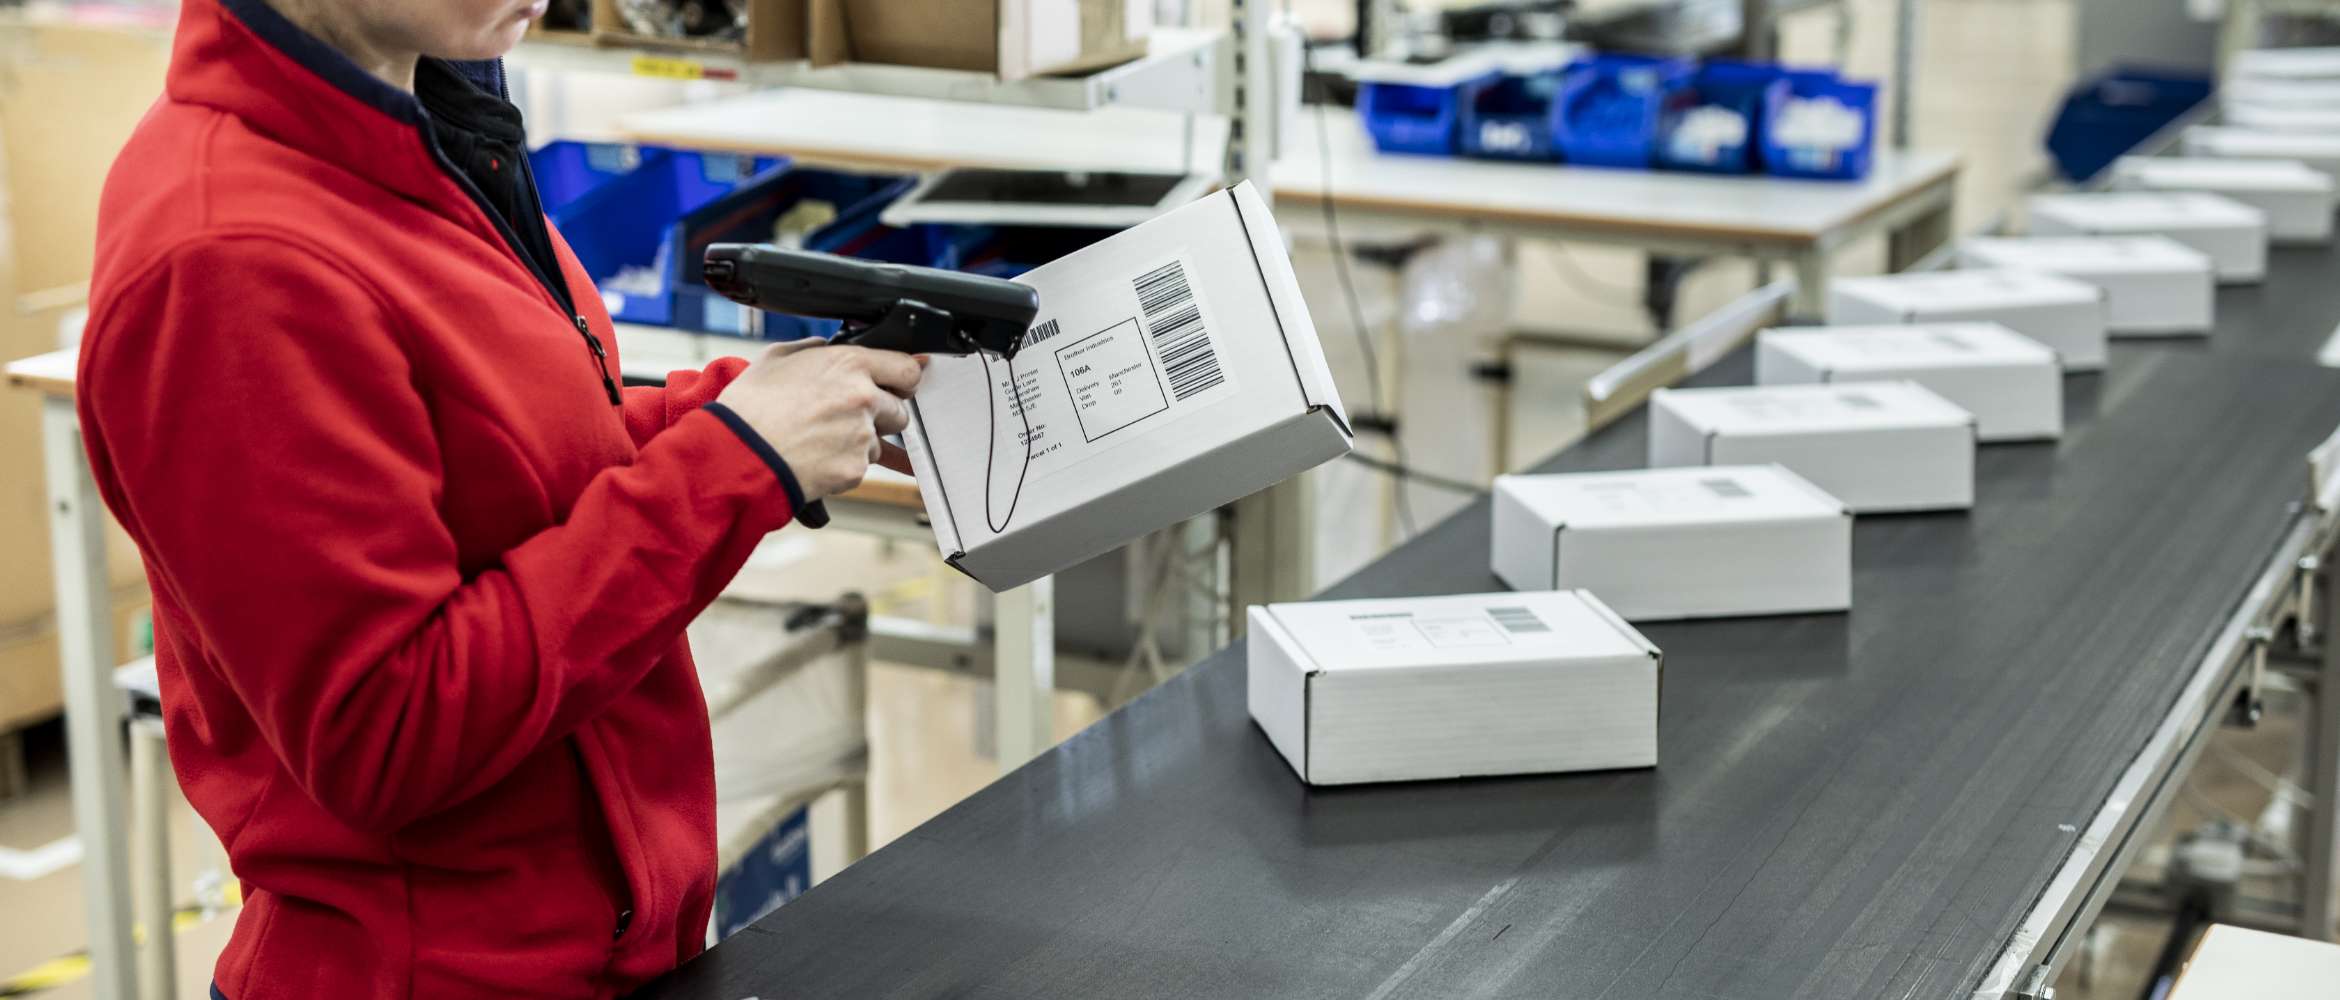 Le convoyeur d’une ligne de production en usine est chargé de colis; un travailleur scanne une étiquette d’adresse à code-barres imprimée